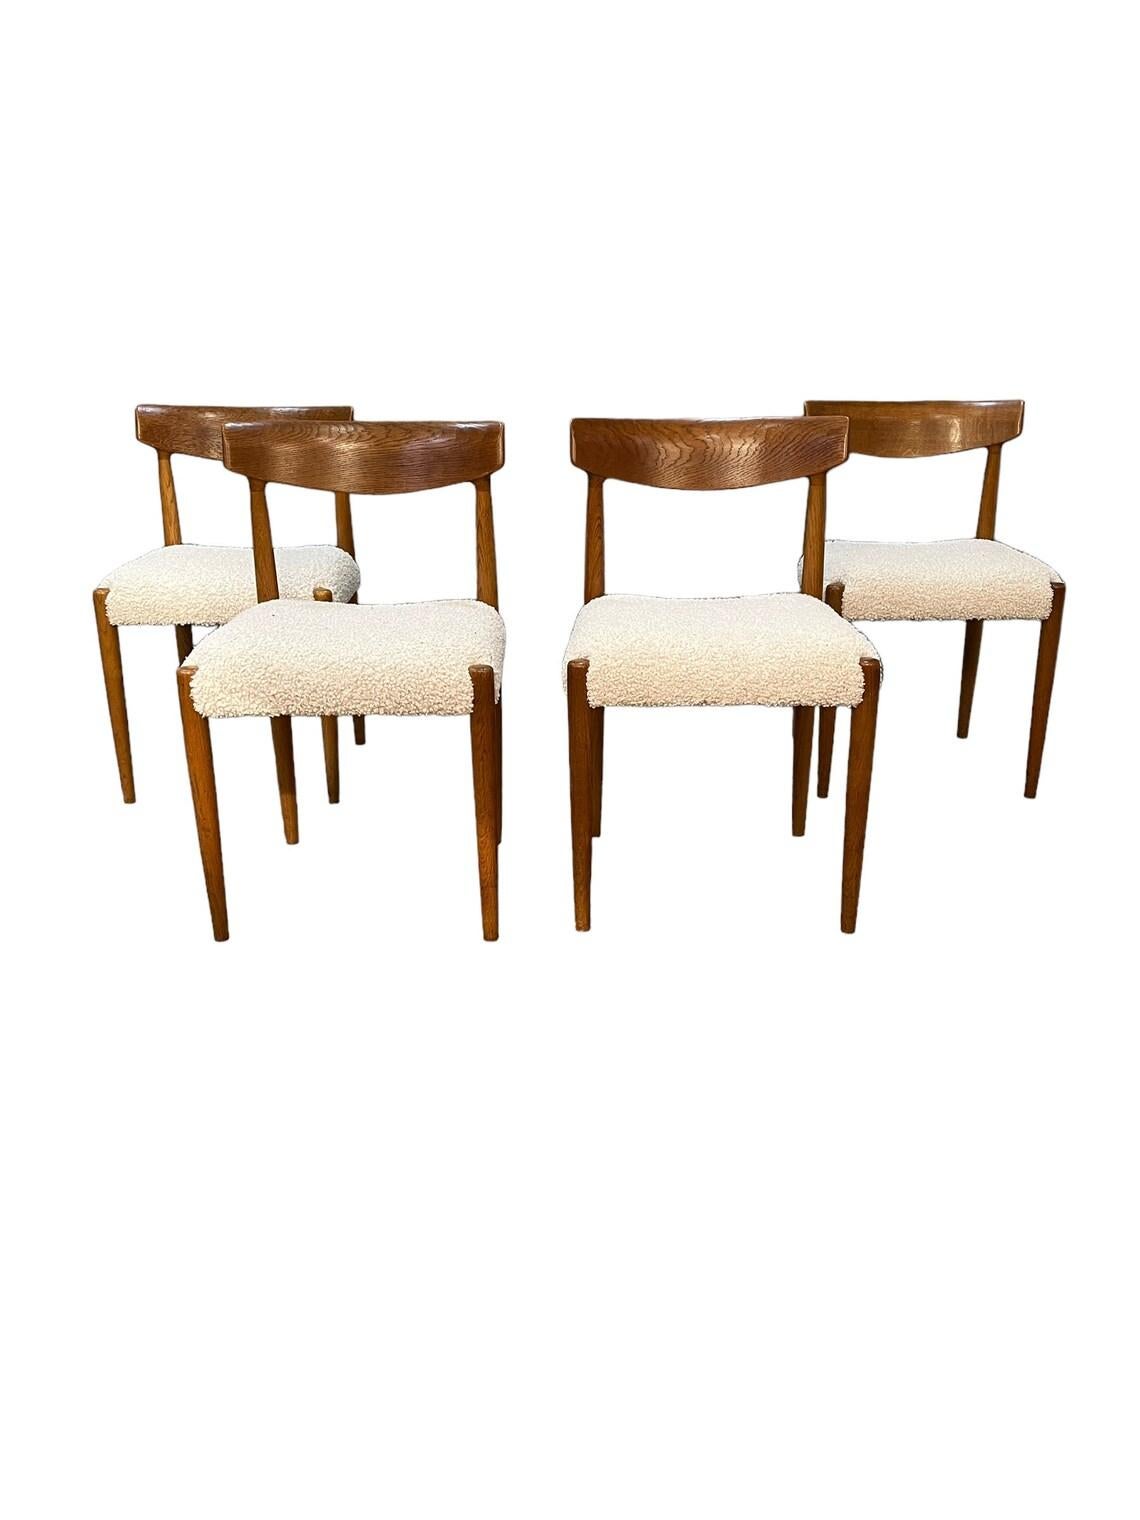 Chaises de salle à manger en teck danois du milieu du siècle, ensemble de 4 chaises entièrement restaurées avec une nouvelle tapisserie en coton bouclé. 
état solide et confortable comme neuf.

dimensions : L19 x P18 x H31.5 pouces 
Hauteur du siège